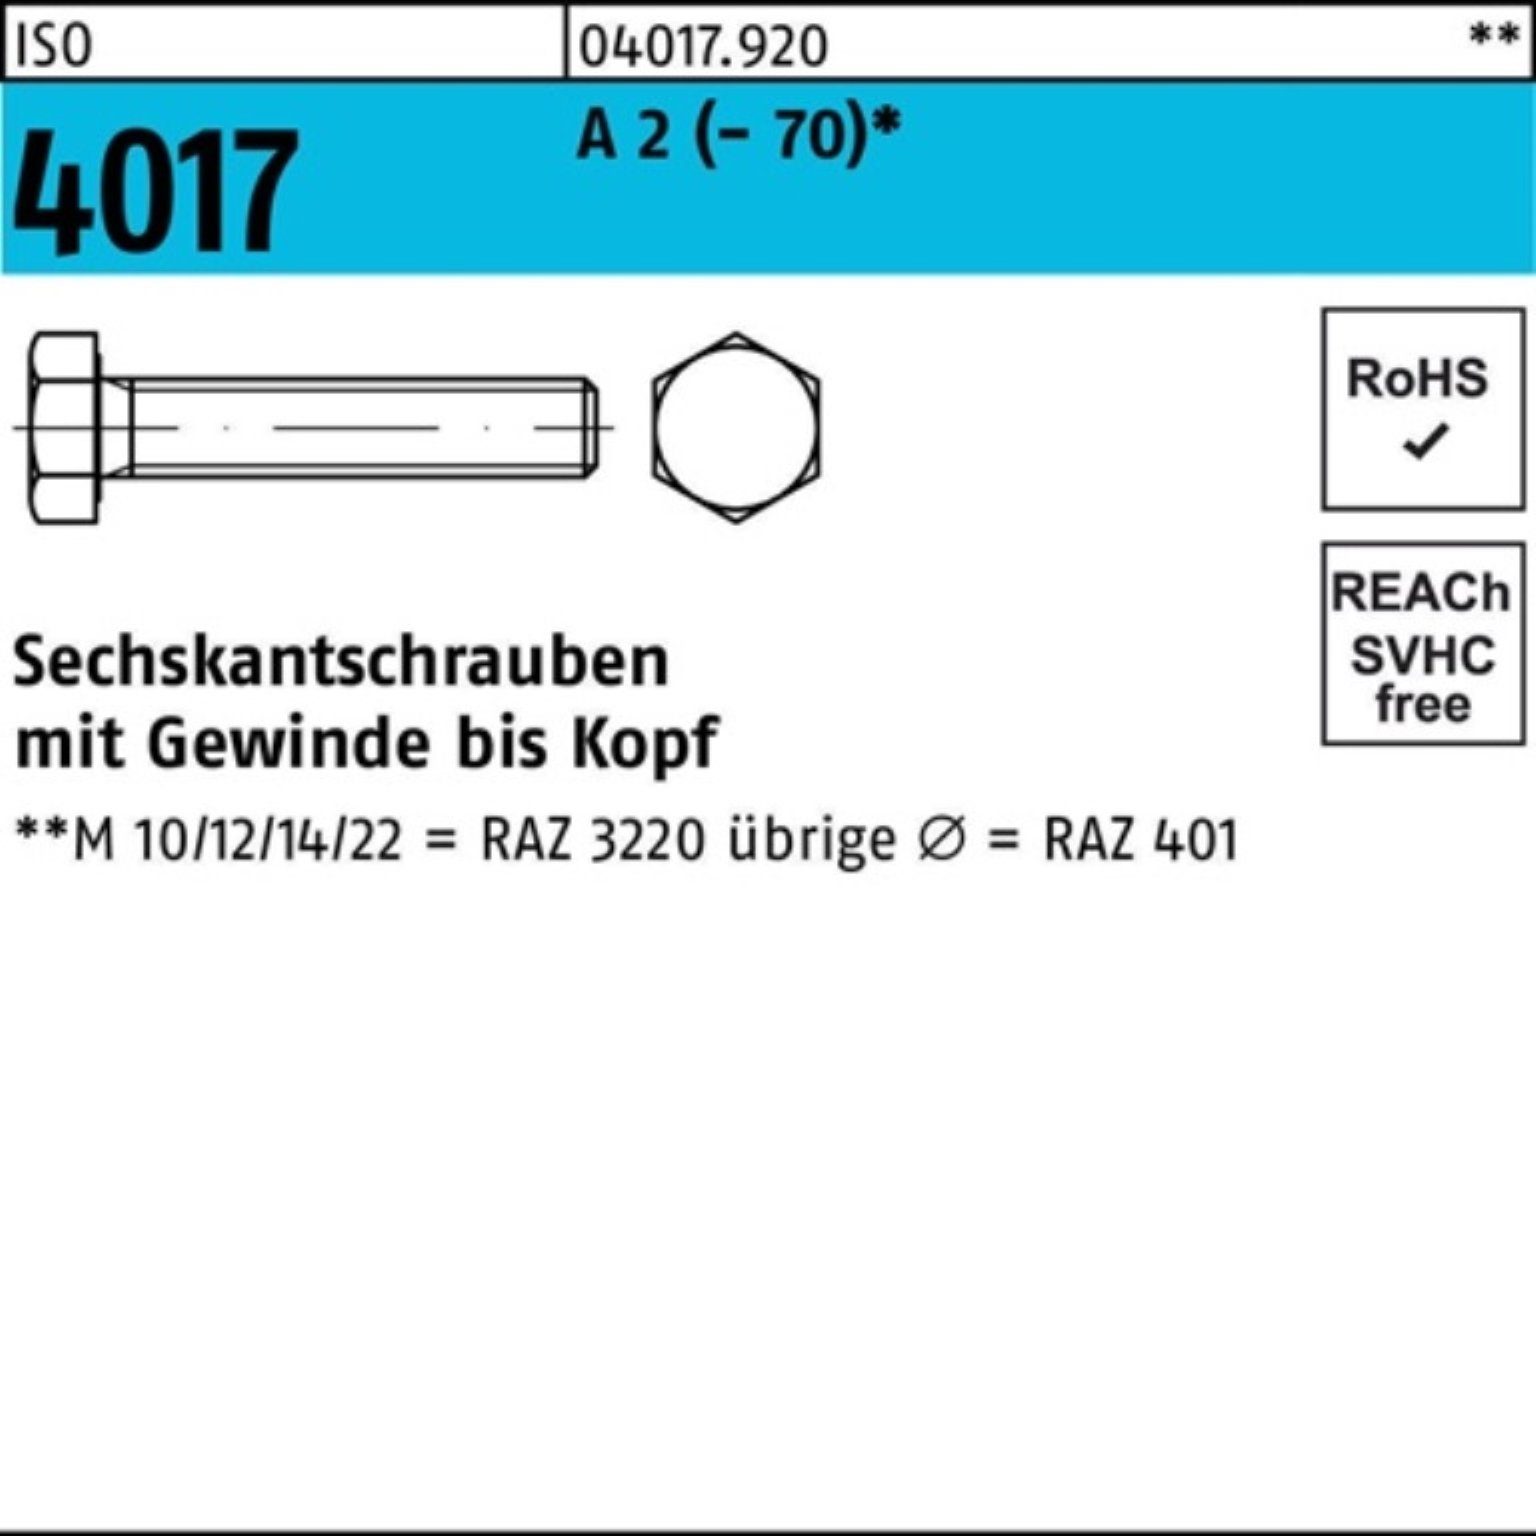 Bufab Sechskantschraube 1 4017 M33x 80 Pack Stück 2 Sechskantschraube A 100er VG (70) ISO I